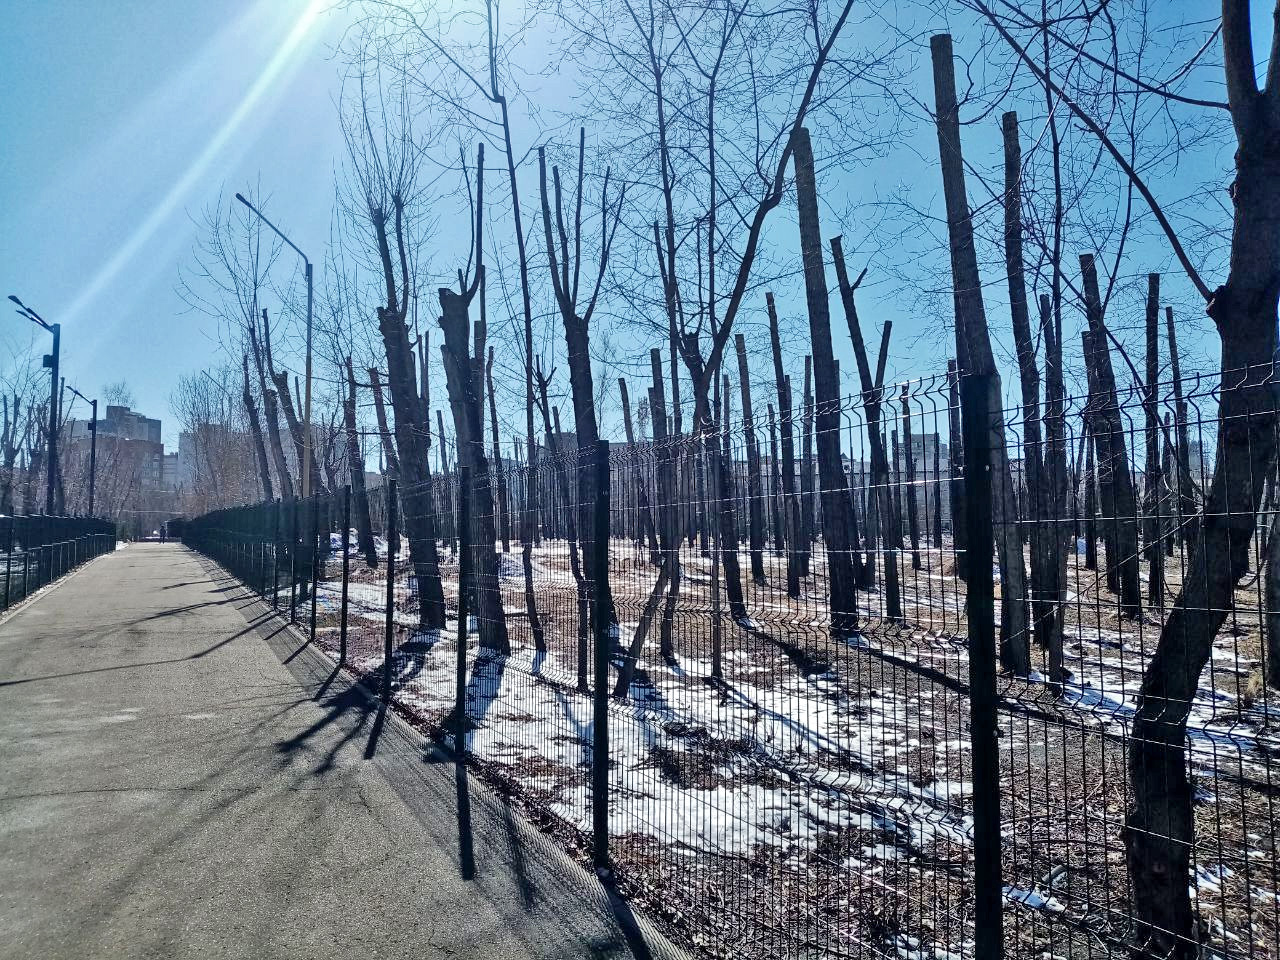 За сотни тополей, которые умрут через 5 лет, руководству парка насчитали всего 50 тыс. рублей